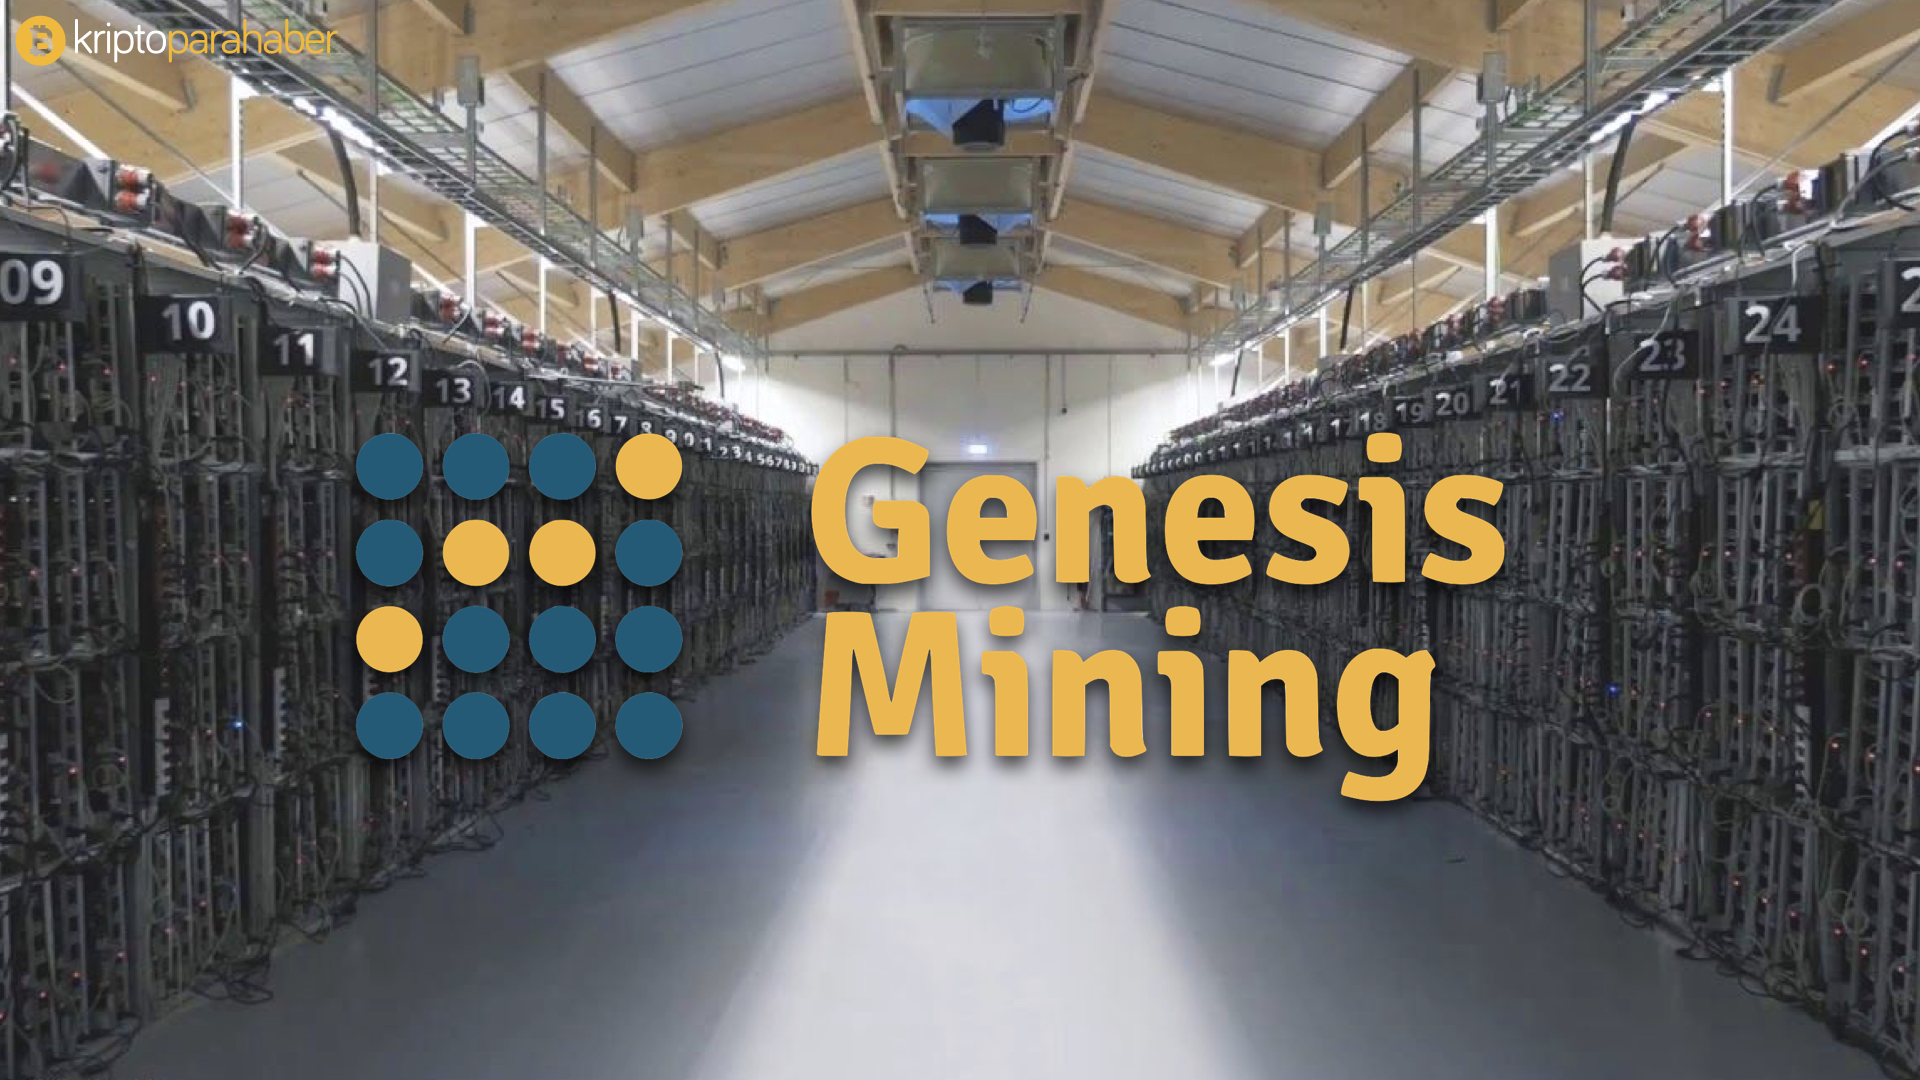 Genesis Mining düşük seviyedeki sözleşmeleri sonlandıracak.